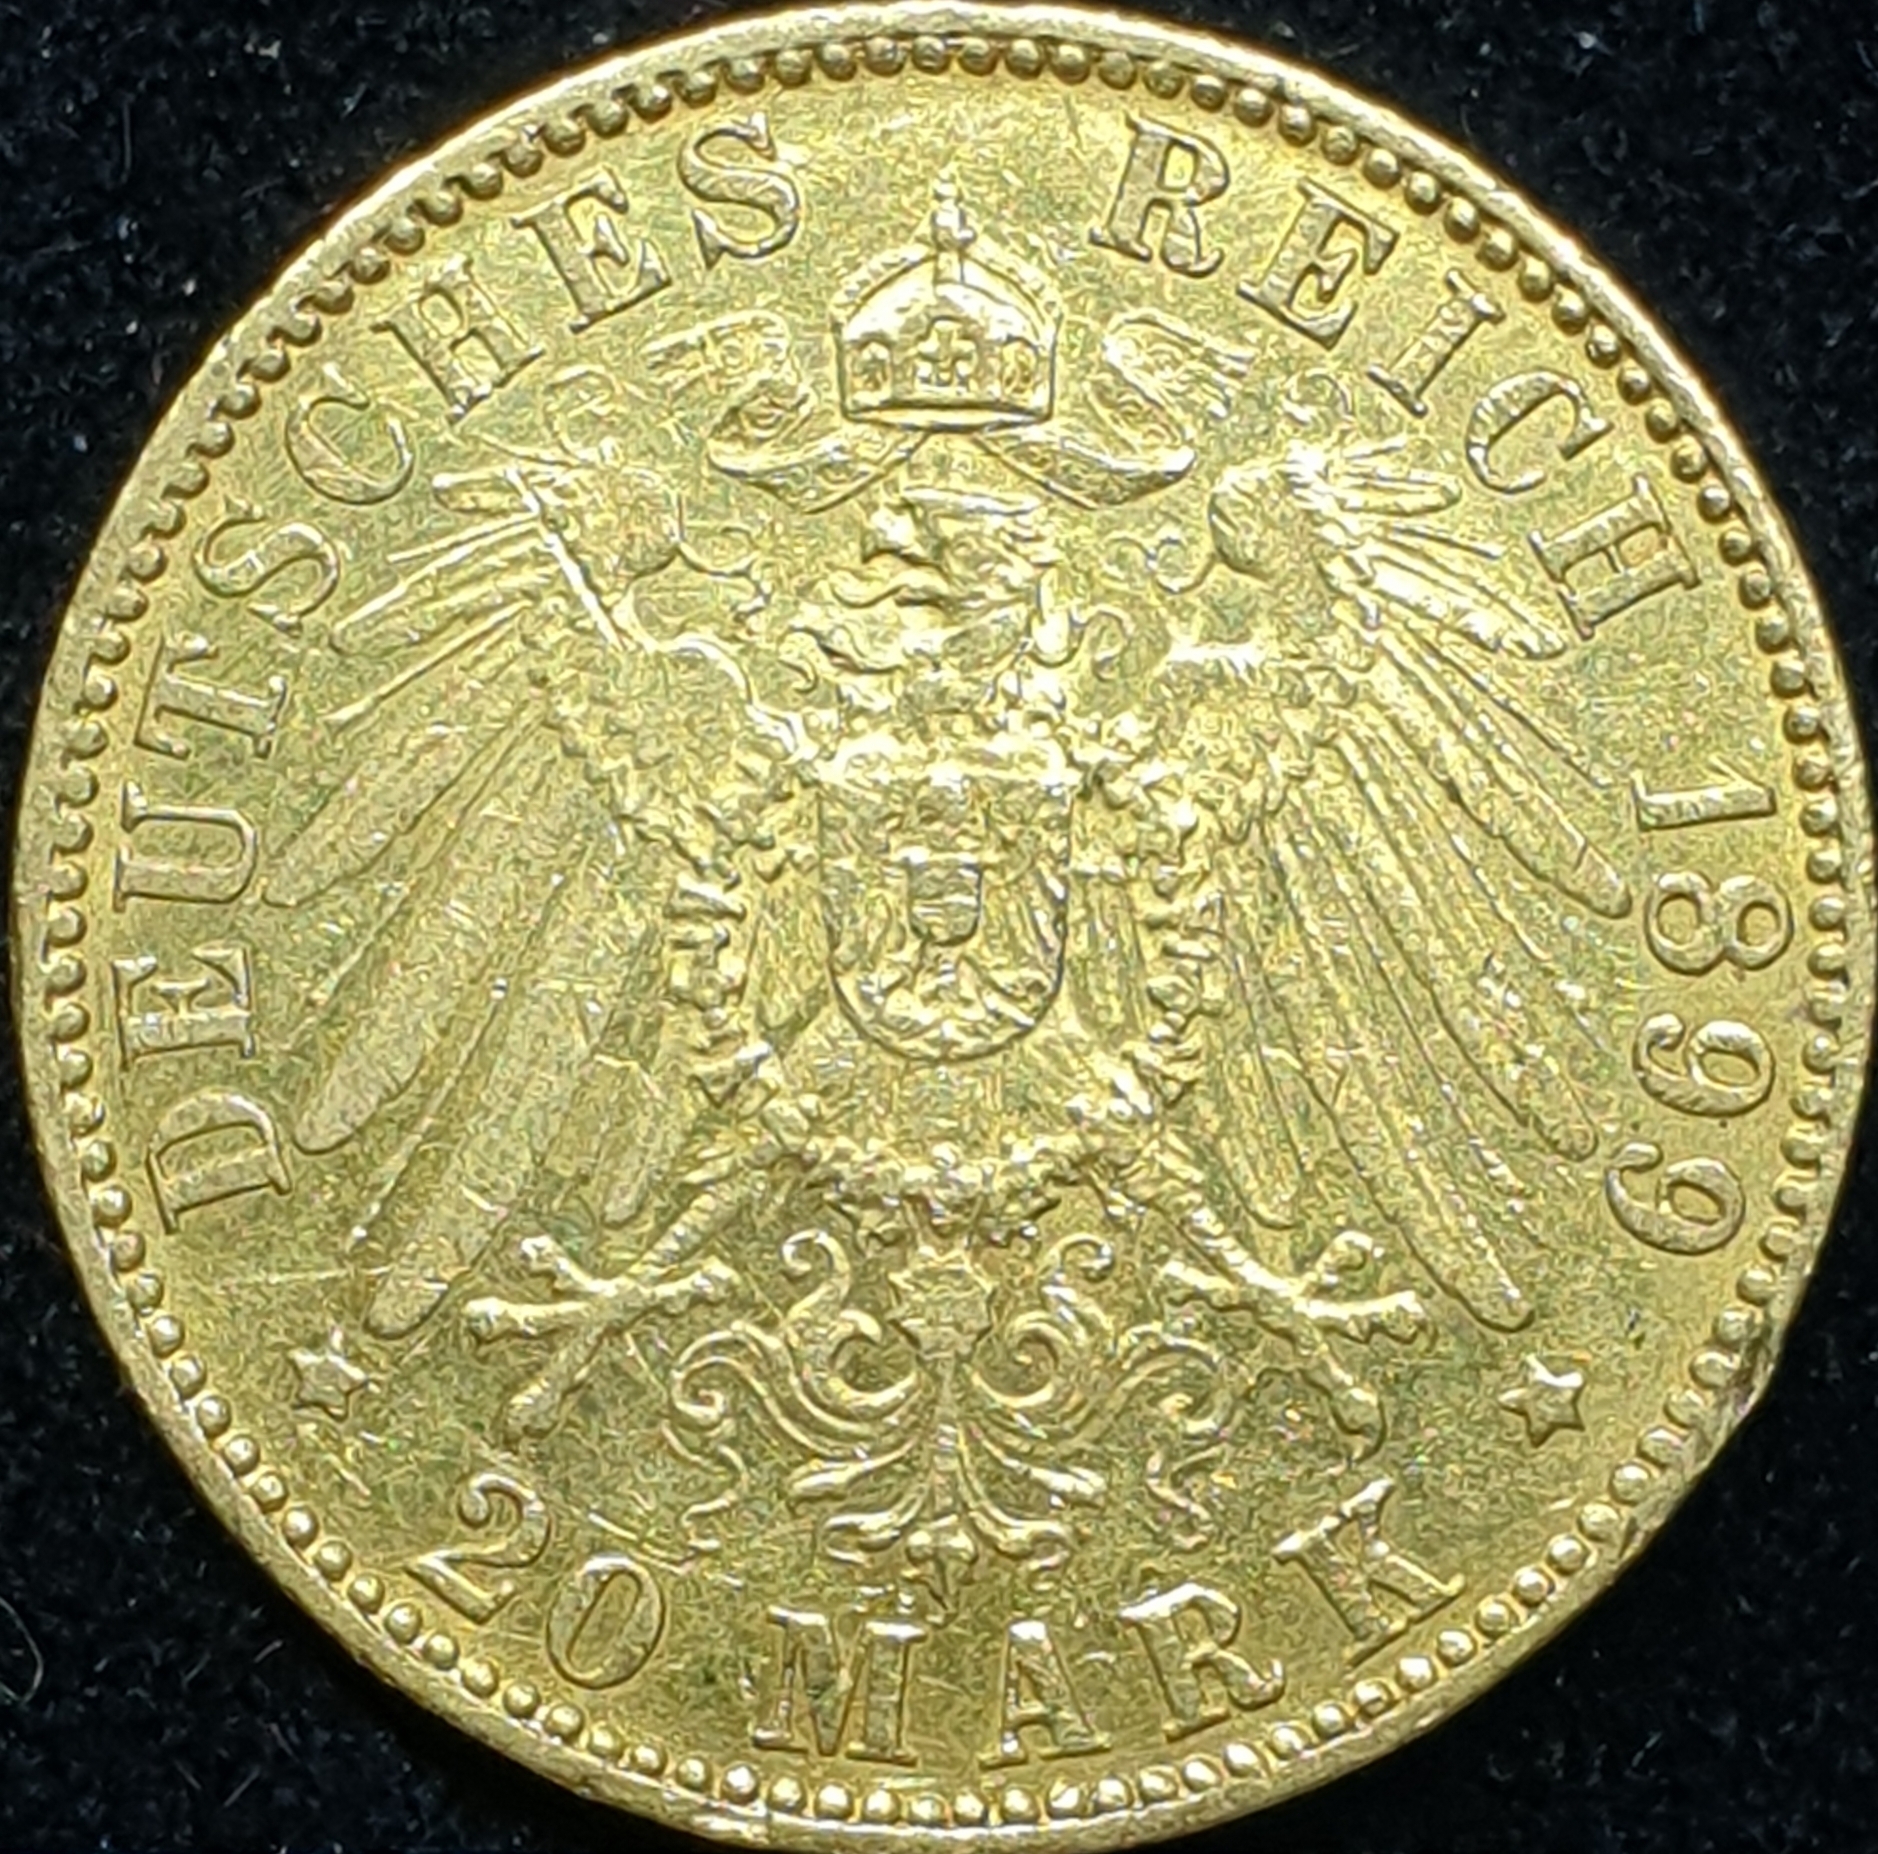 Germany - Hamburg - 20 mark - 1899 - J